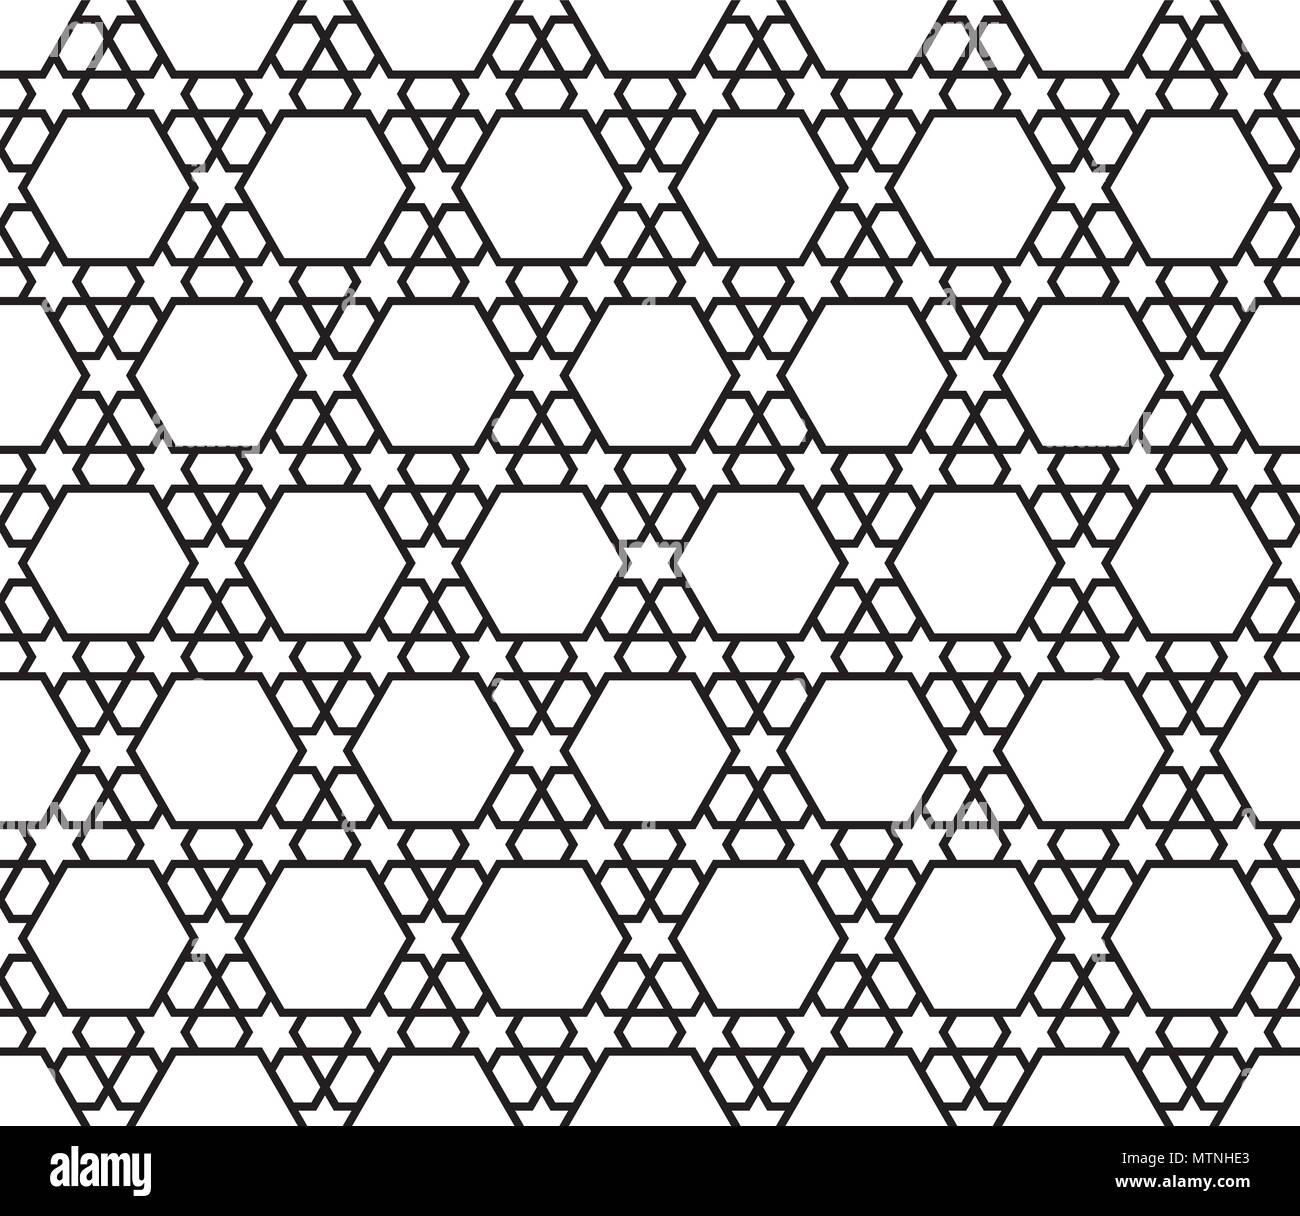 Modèle sans couture en noir et blanc dans des lignes moyennes.Basé sur l'arabe motifs géométriques. Illustration de Vecteur